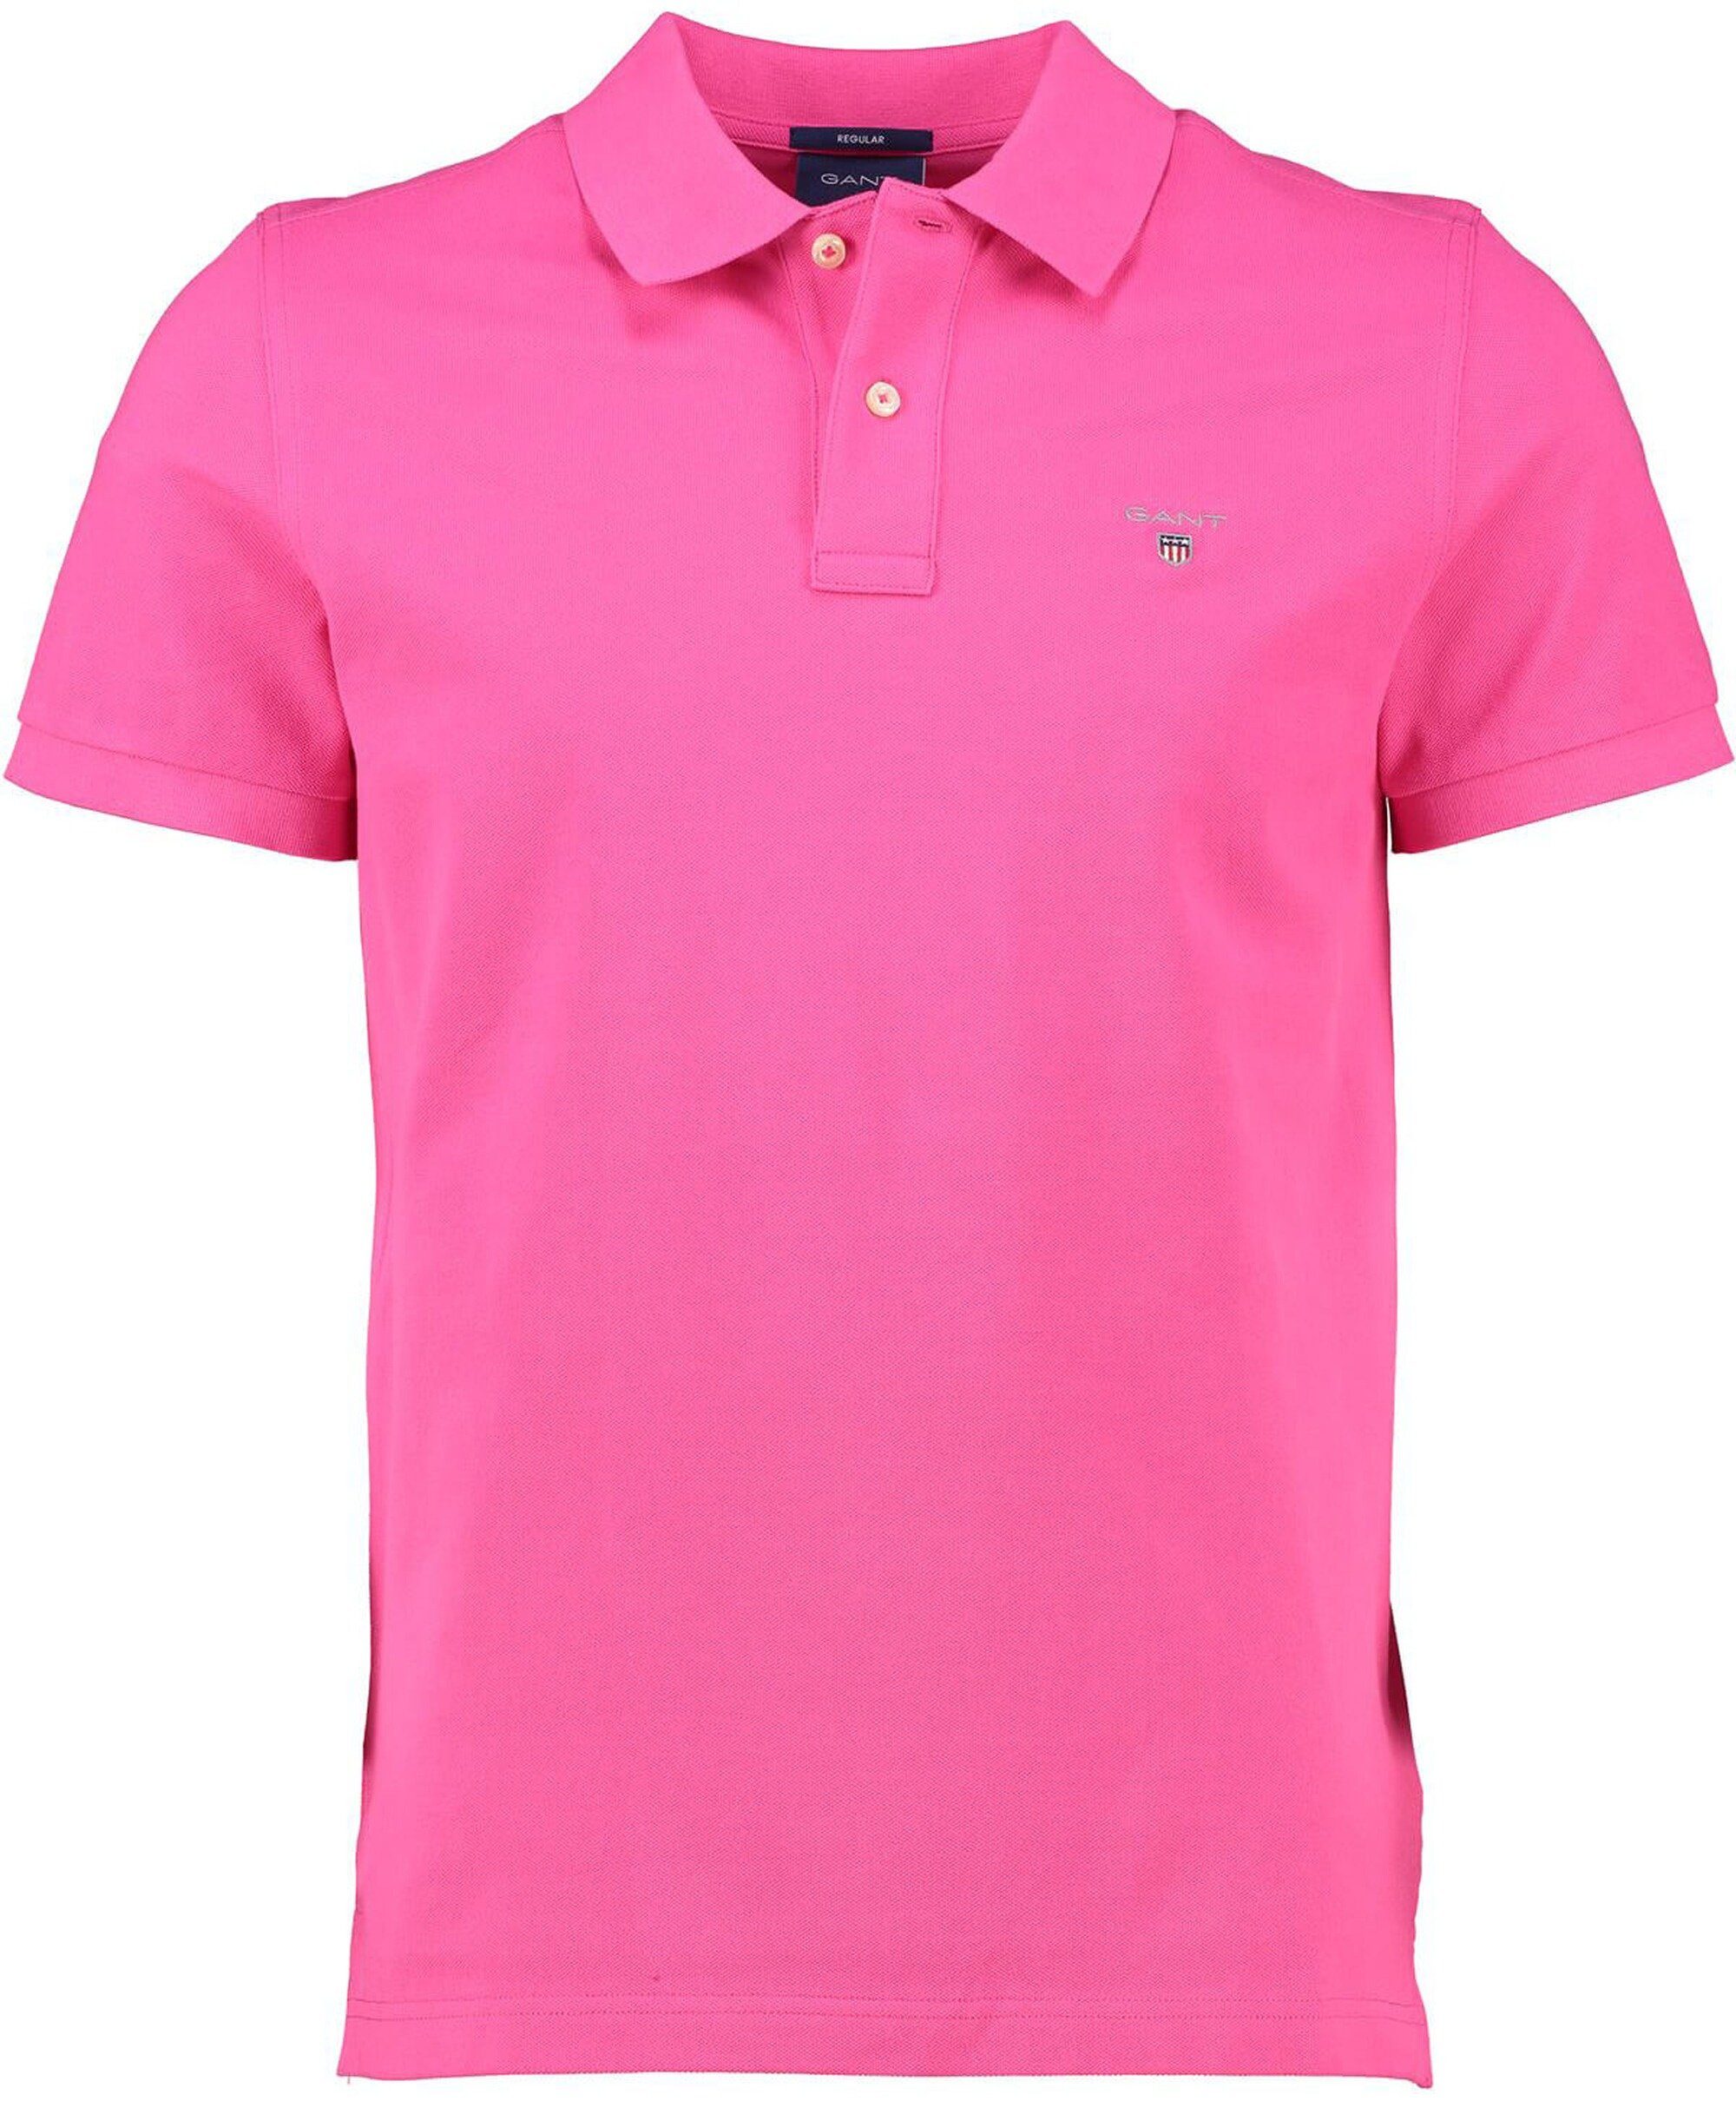 Gant Poloshirt GANT Polo-Shirt pink hyper Original Rugger pink